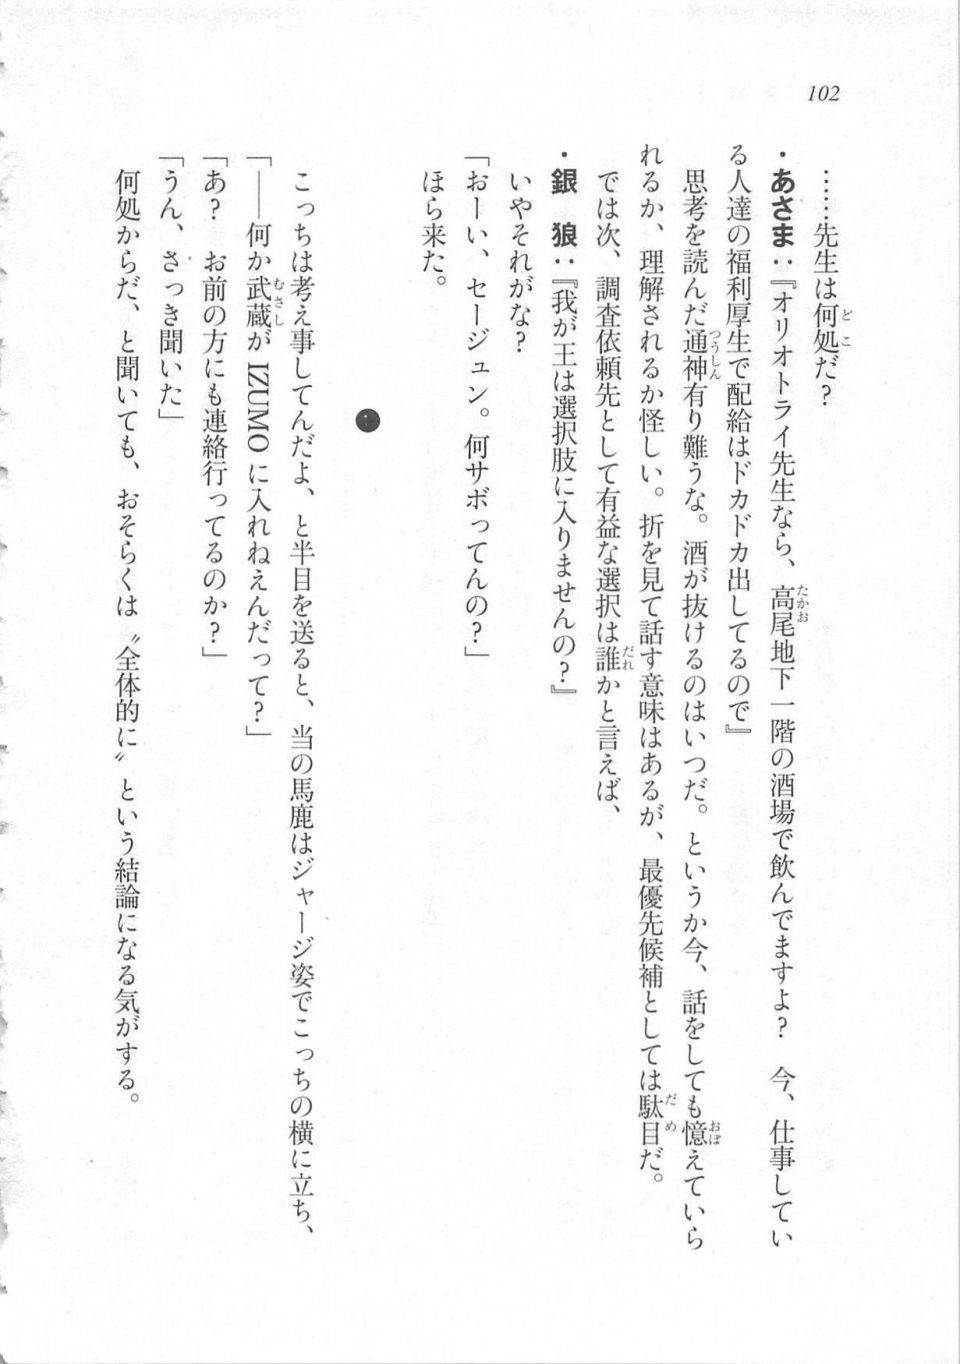 Kyoukai Senjou no Horizon LN Sidestory Vol 3 - Photo #106